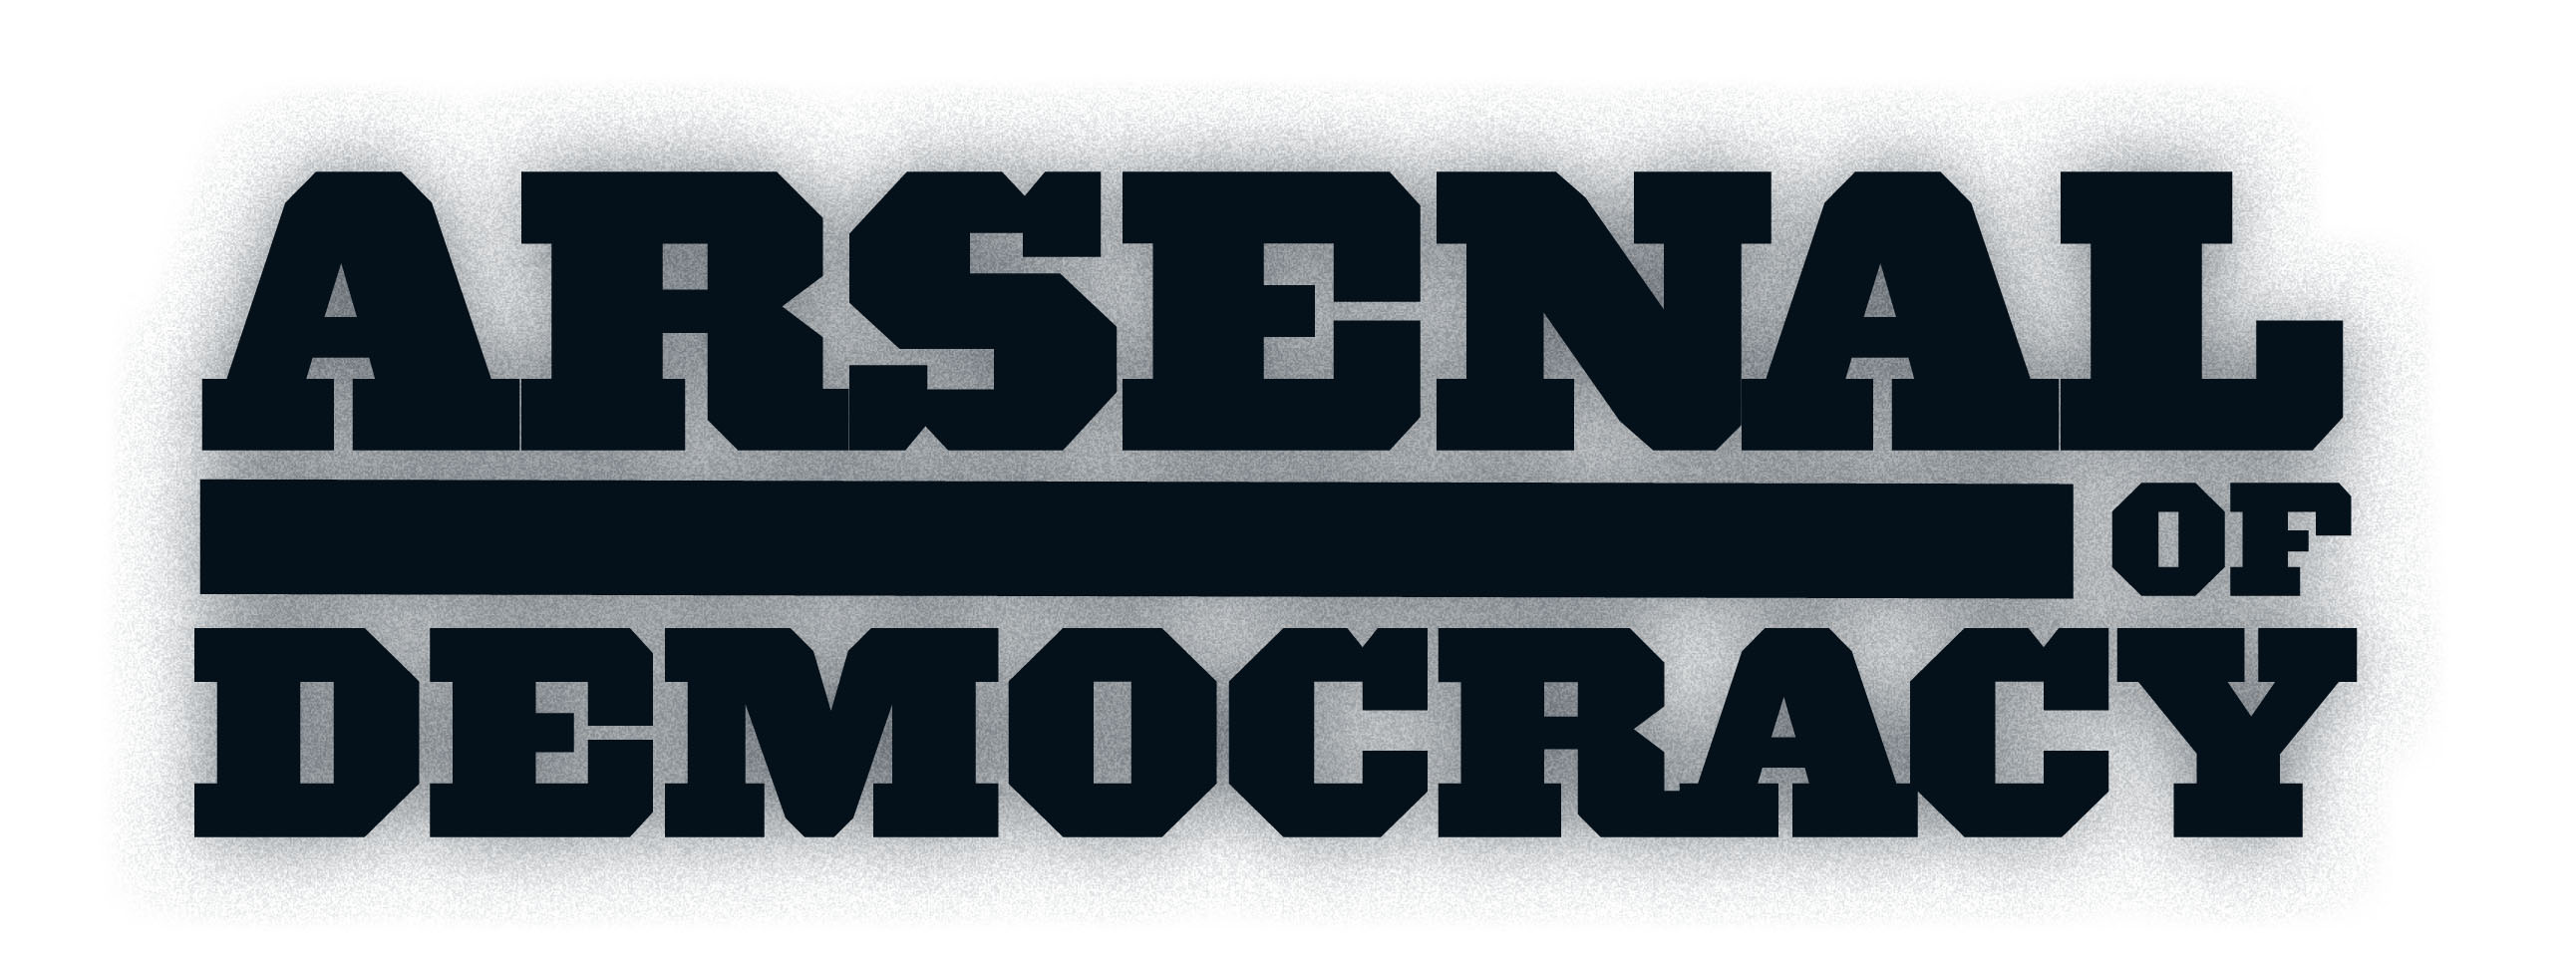 Arsenal of Democracy. Arsenal of Democracy: a Hearts of Iron game. Arsenal of Democracy (Video game). Демократия PNG.